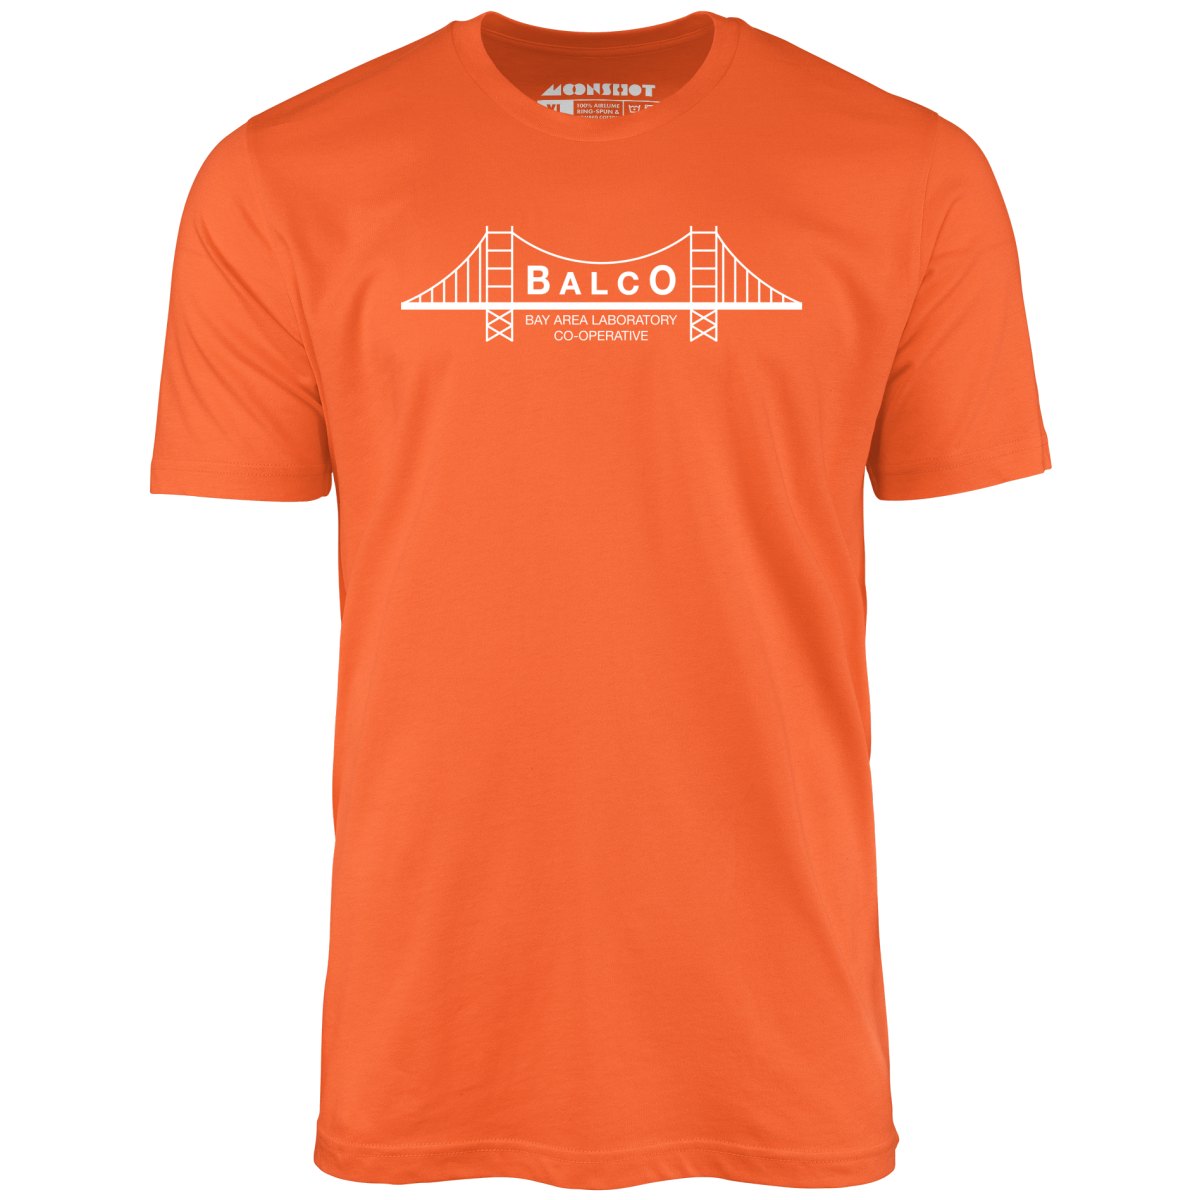 Balco - Unisex T-Shirt